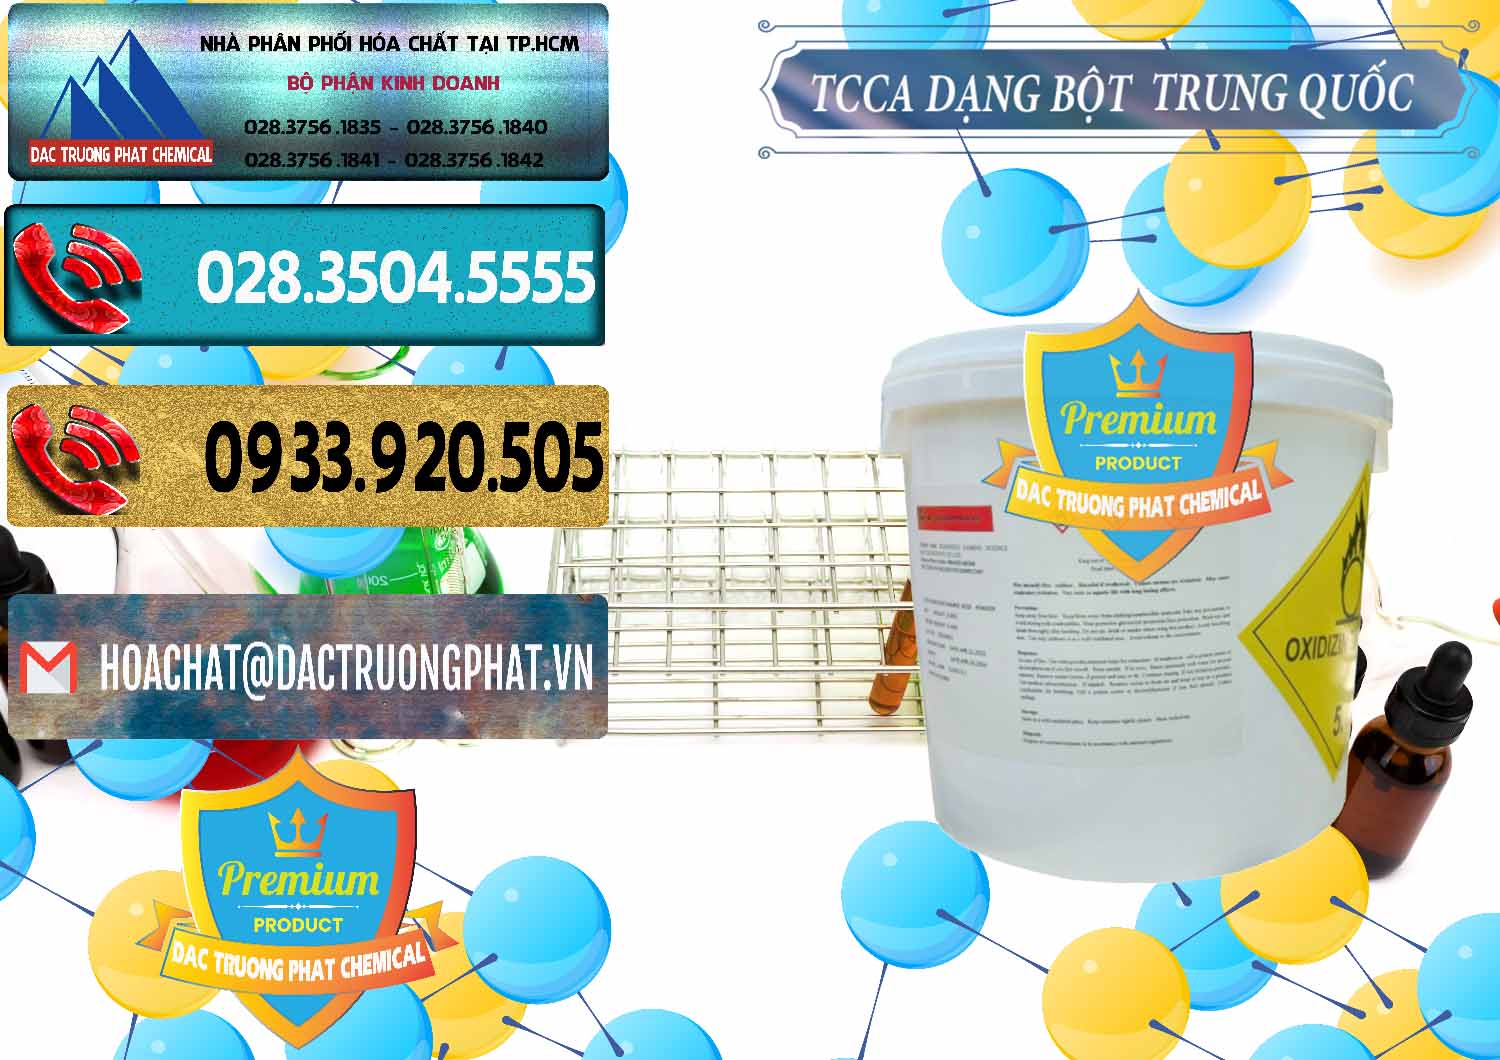 Kinh doanh - bán TCCA - Acid Trichloroisocyanuric Dạng Bột Thùng 5kg Trung Quốc China - 0378 - Nơi bán & phân phối hóa chất tại TP.HCM - hoachatdetnhuom.com